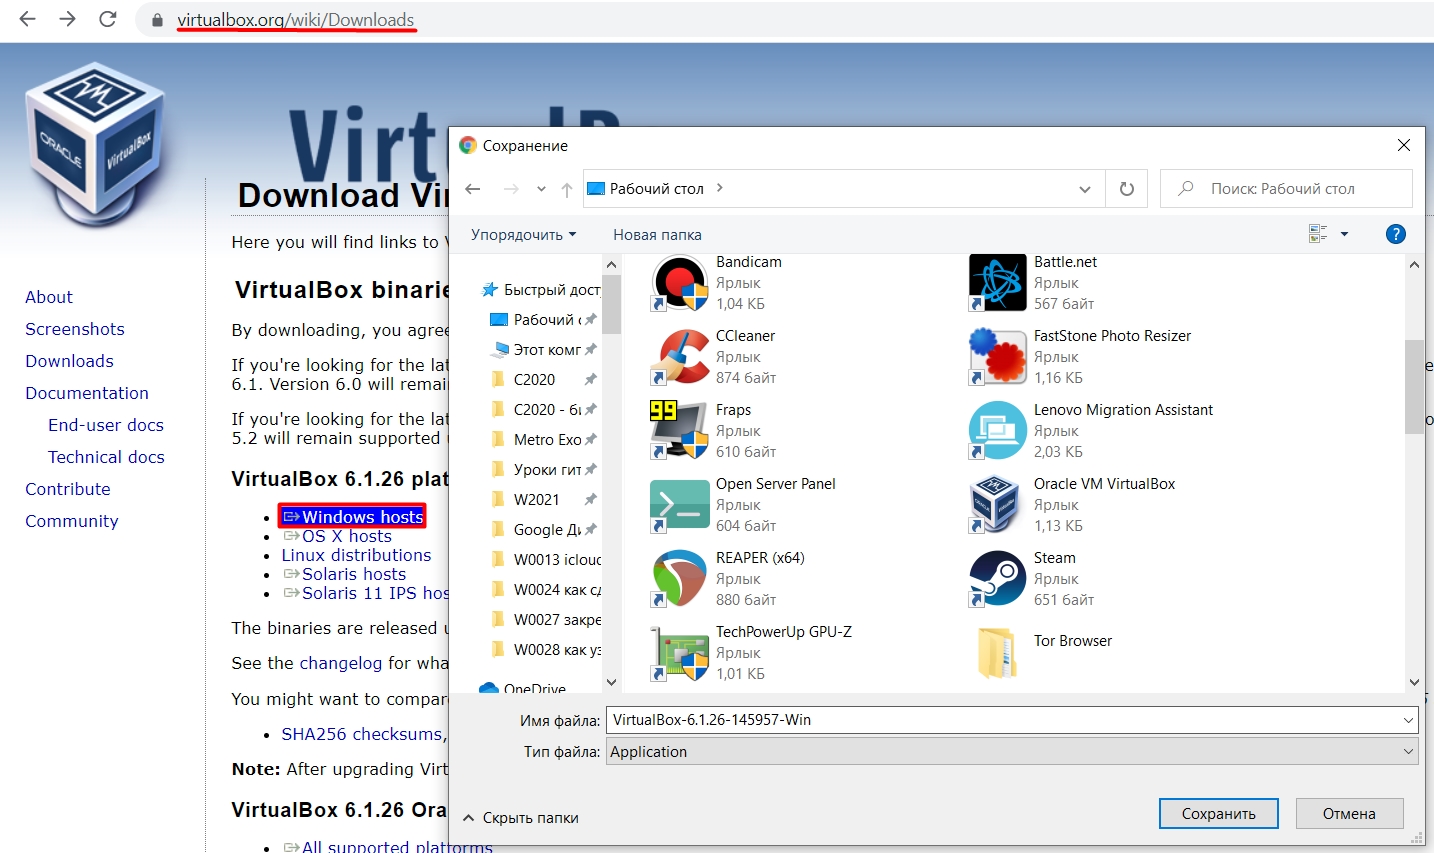 Как установить виртуальную машину в VirtualBox: полный гайд от Wi-Fi-гида